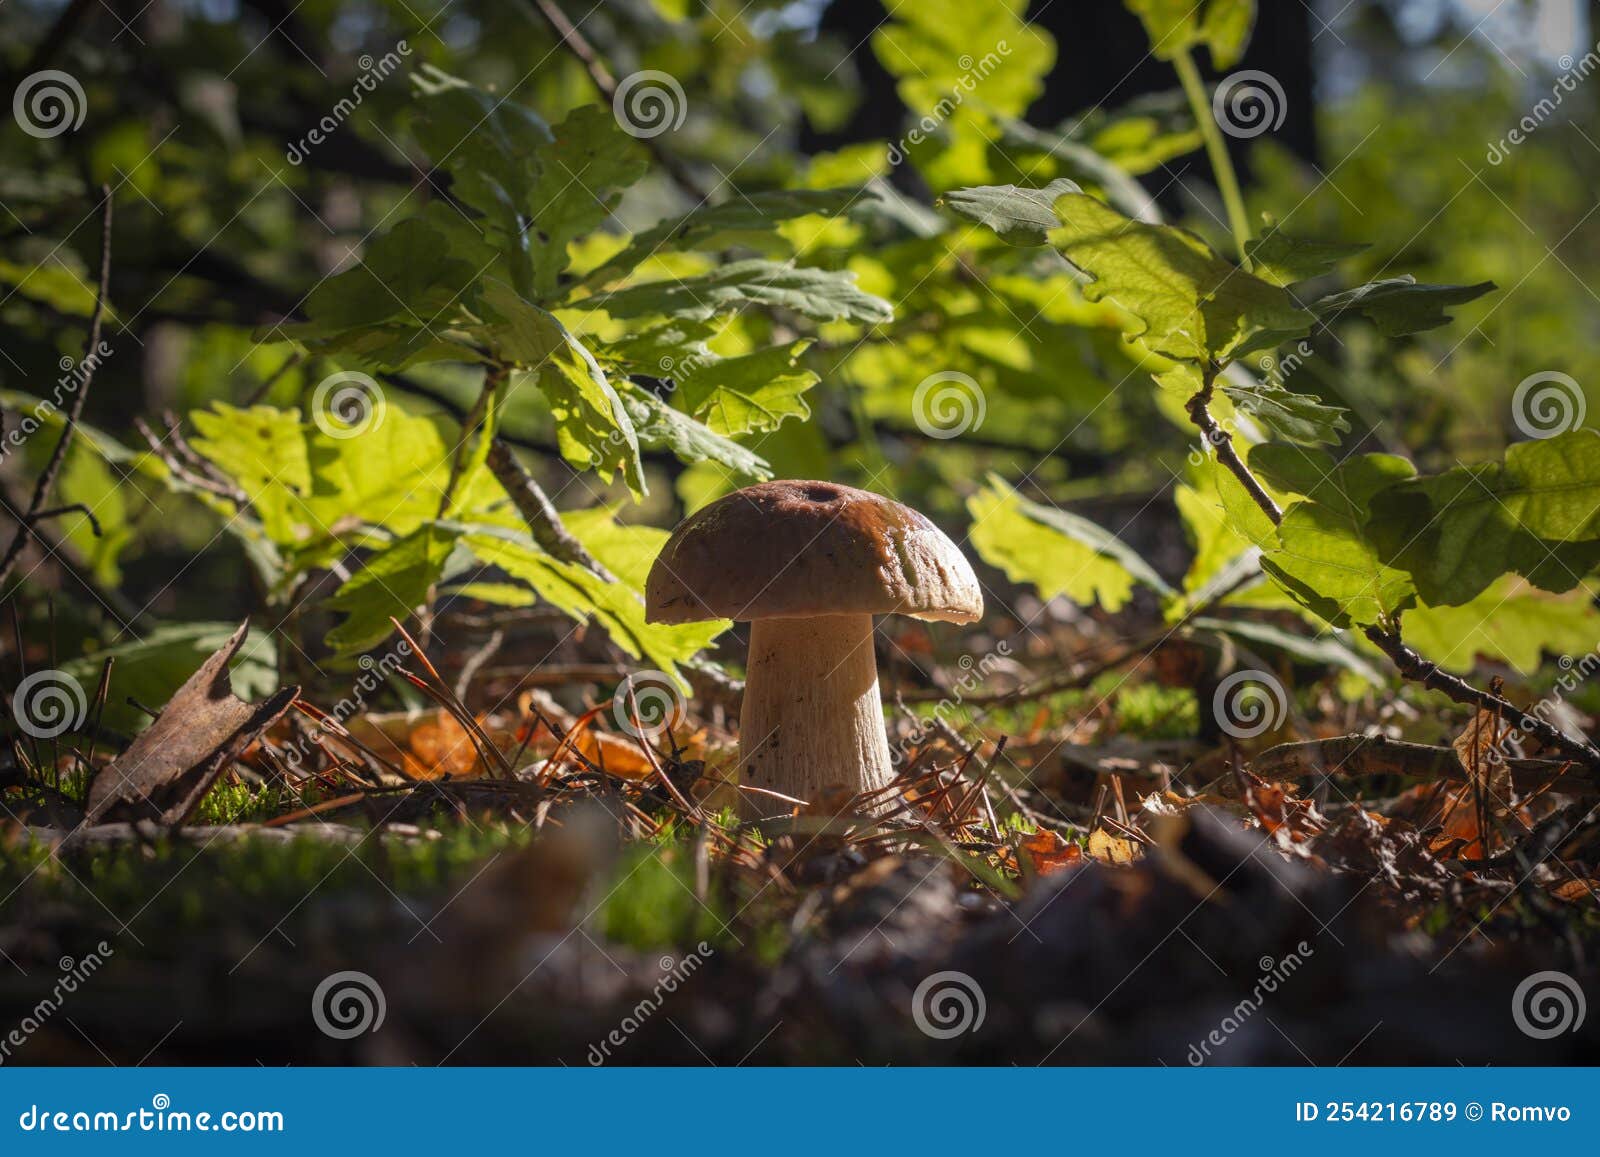 Uma figura de cogumelo feita de um grande número de pequenos cogumelos e  folhas de carvalho sobre um fundo azul. comida vegetariana natural da  floresta.